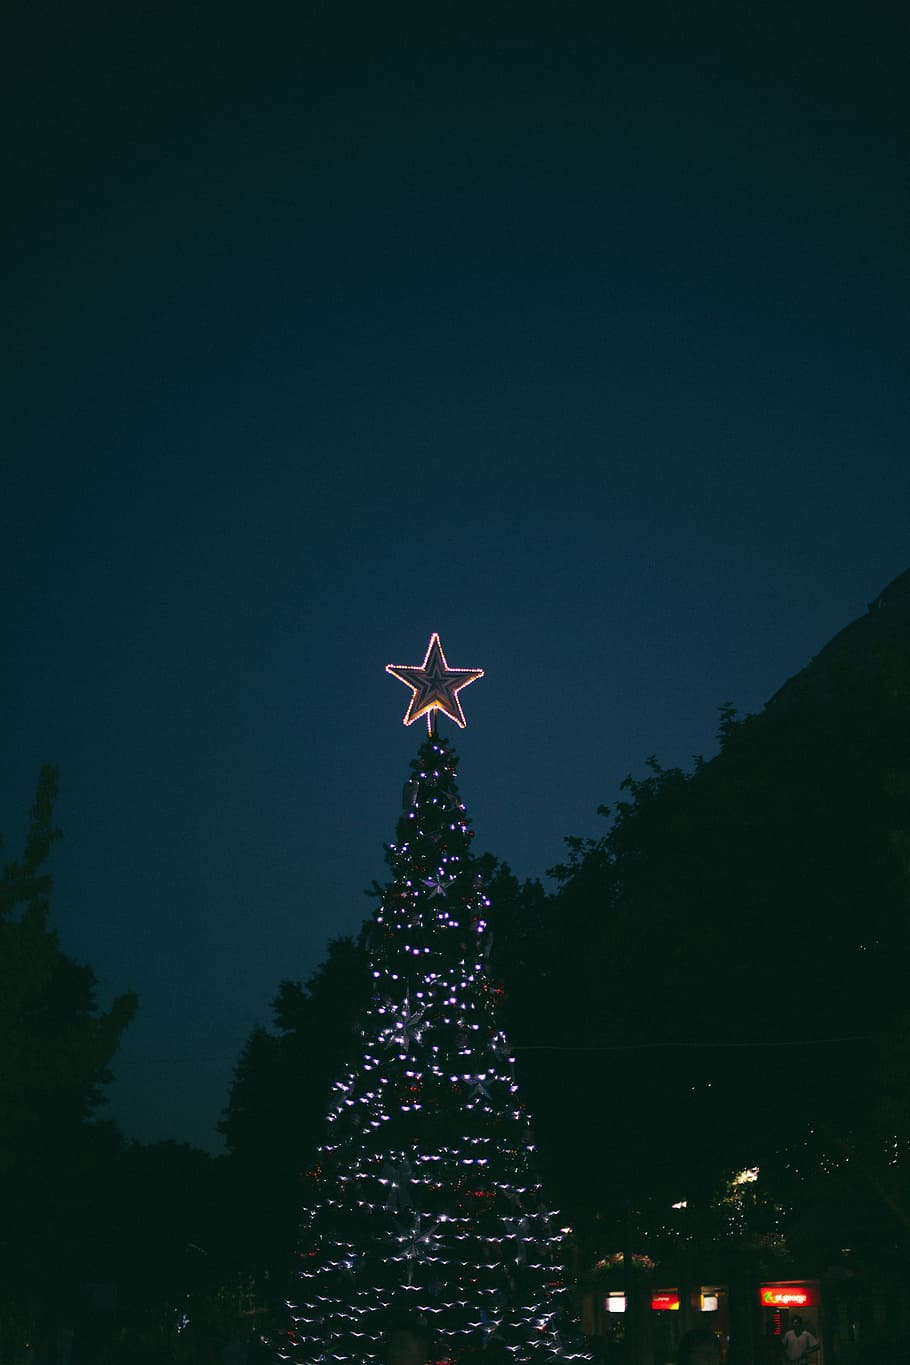 夜, クリスマス, 光, 外, 木, 植物, ツリー, クリスマスツリー, クリスマスデコレーション, 装飾